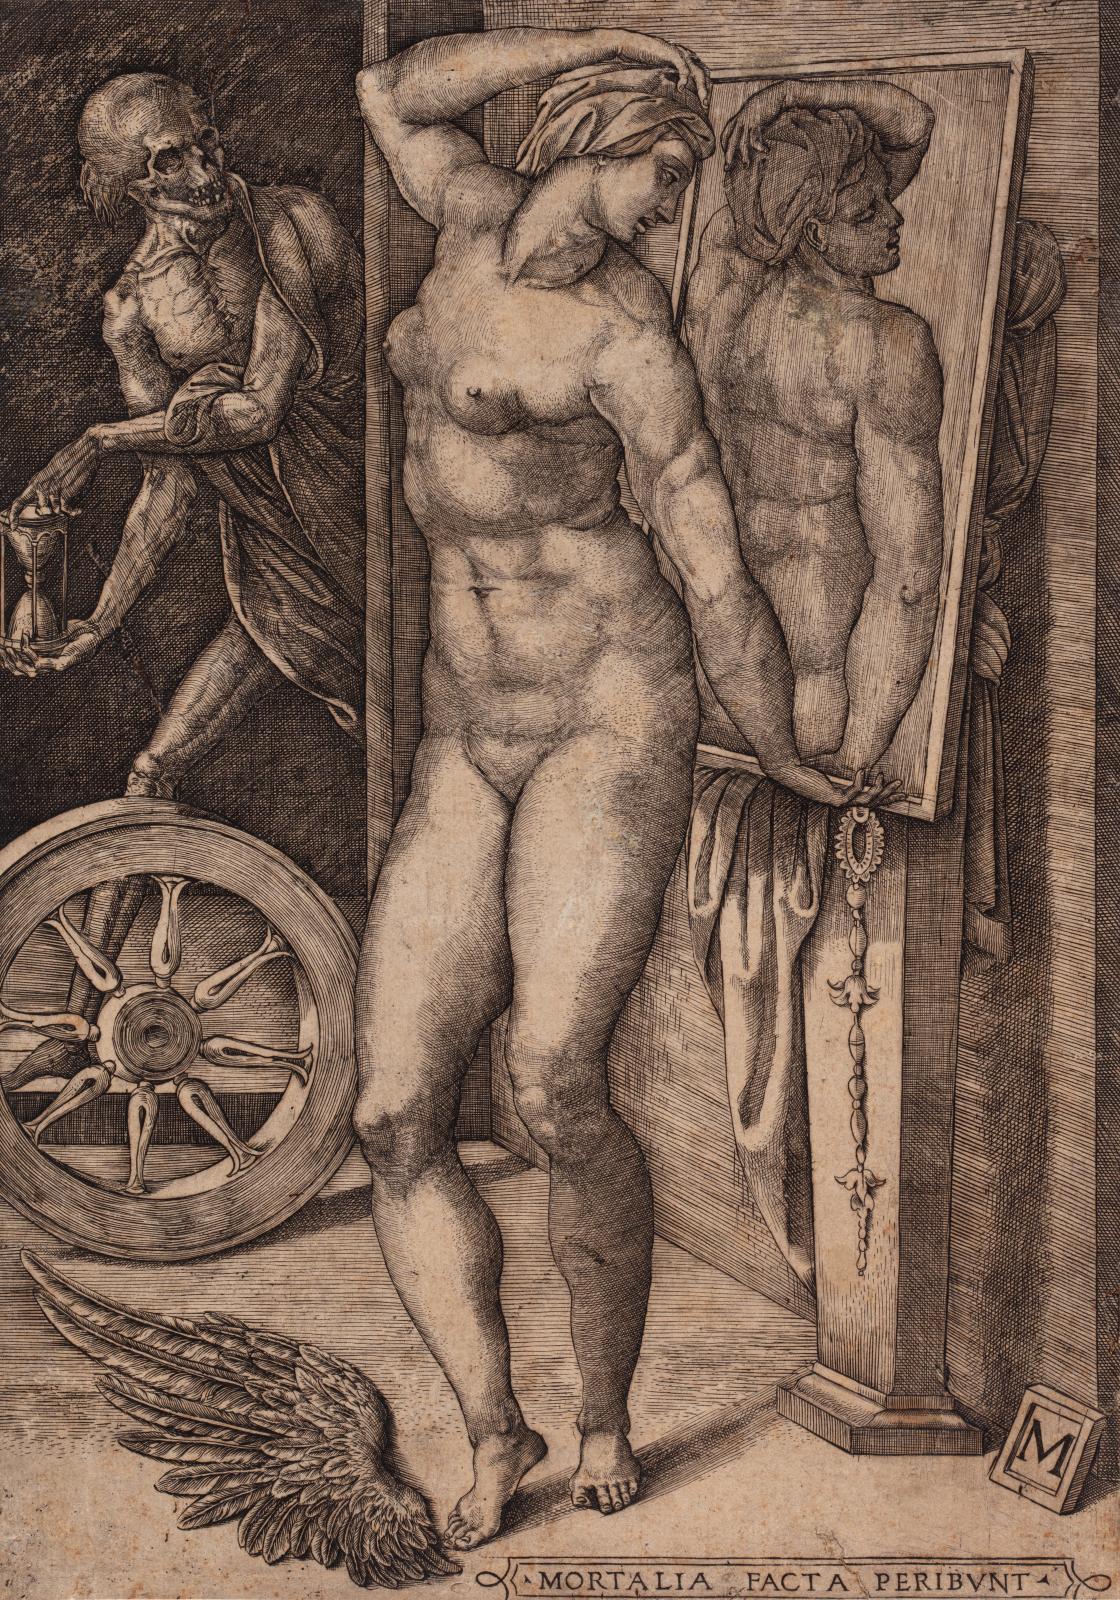 Anonyme, identifié comme le « monogrammiste M », La Femme à la toilette surprise par la mort, XVIe siècle, eau-forte (détail), Lyon, musée